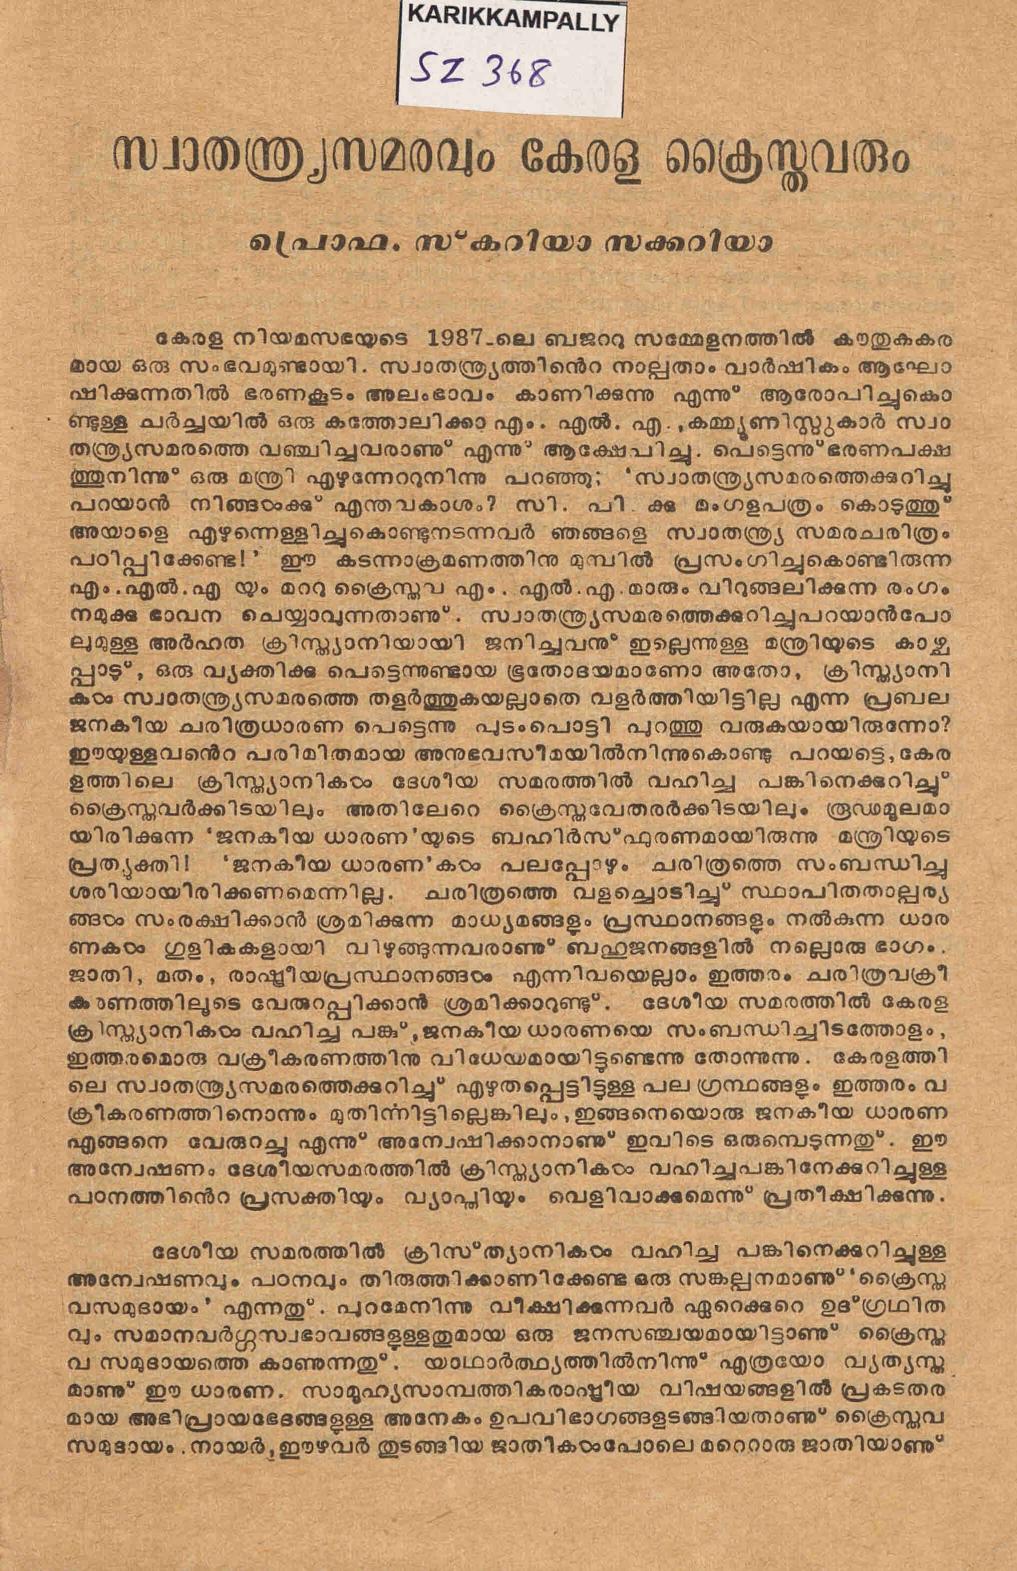 1987 - സ്വാതന്ത്ര്യ സമരവും കേരള ക്രൈസ്തവരും - സ്കറിയ സക്കറിയ